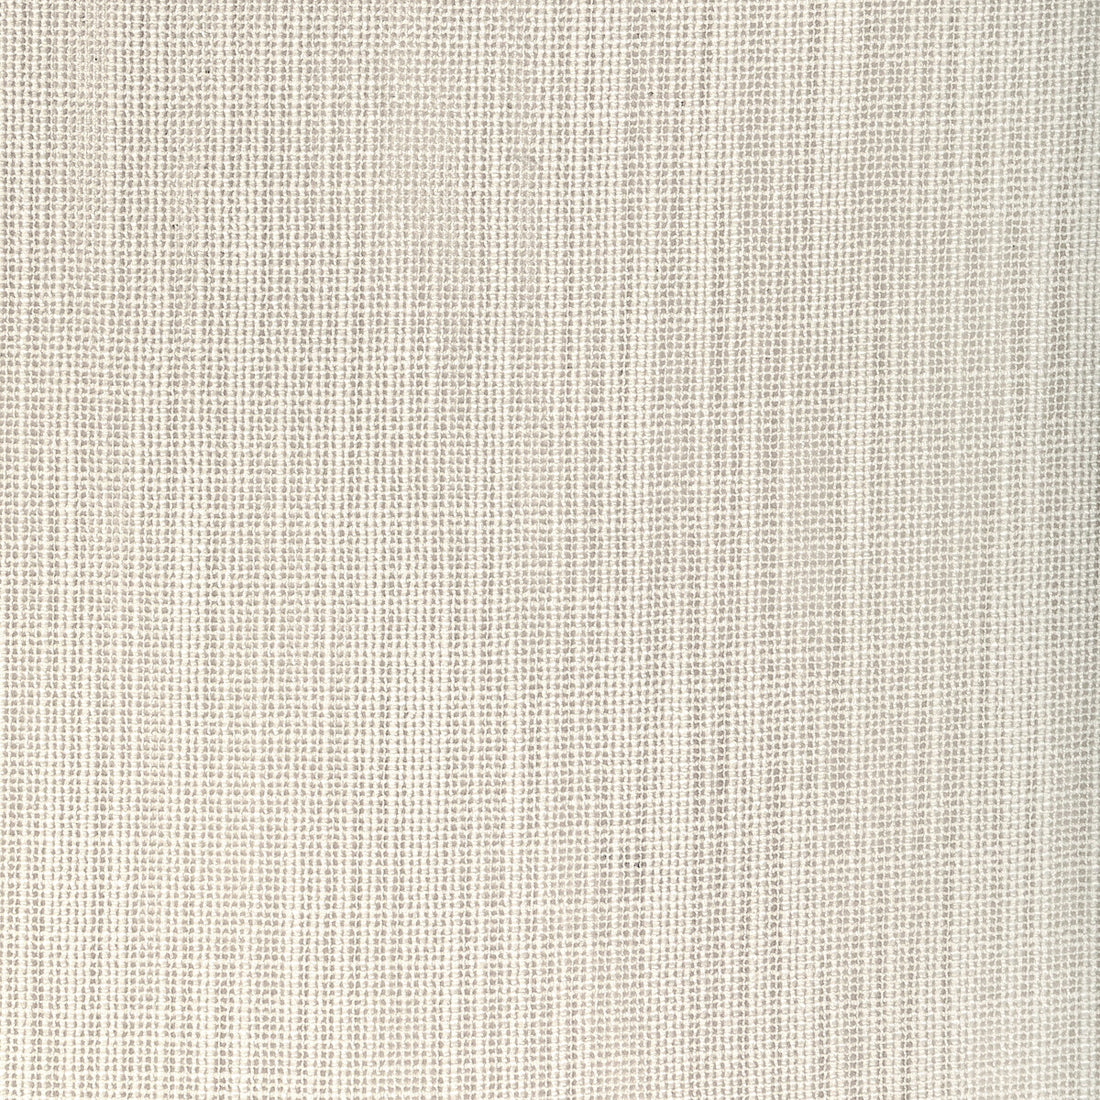 Kravet Design fabric in 4940-16 color - pattern 4940.16.0 - by Kravet Basics